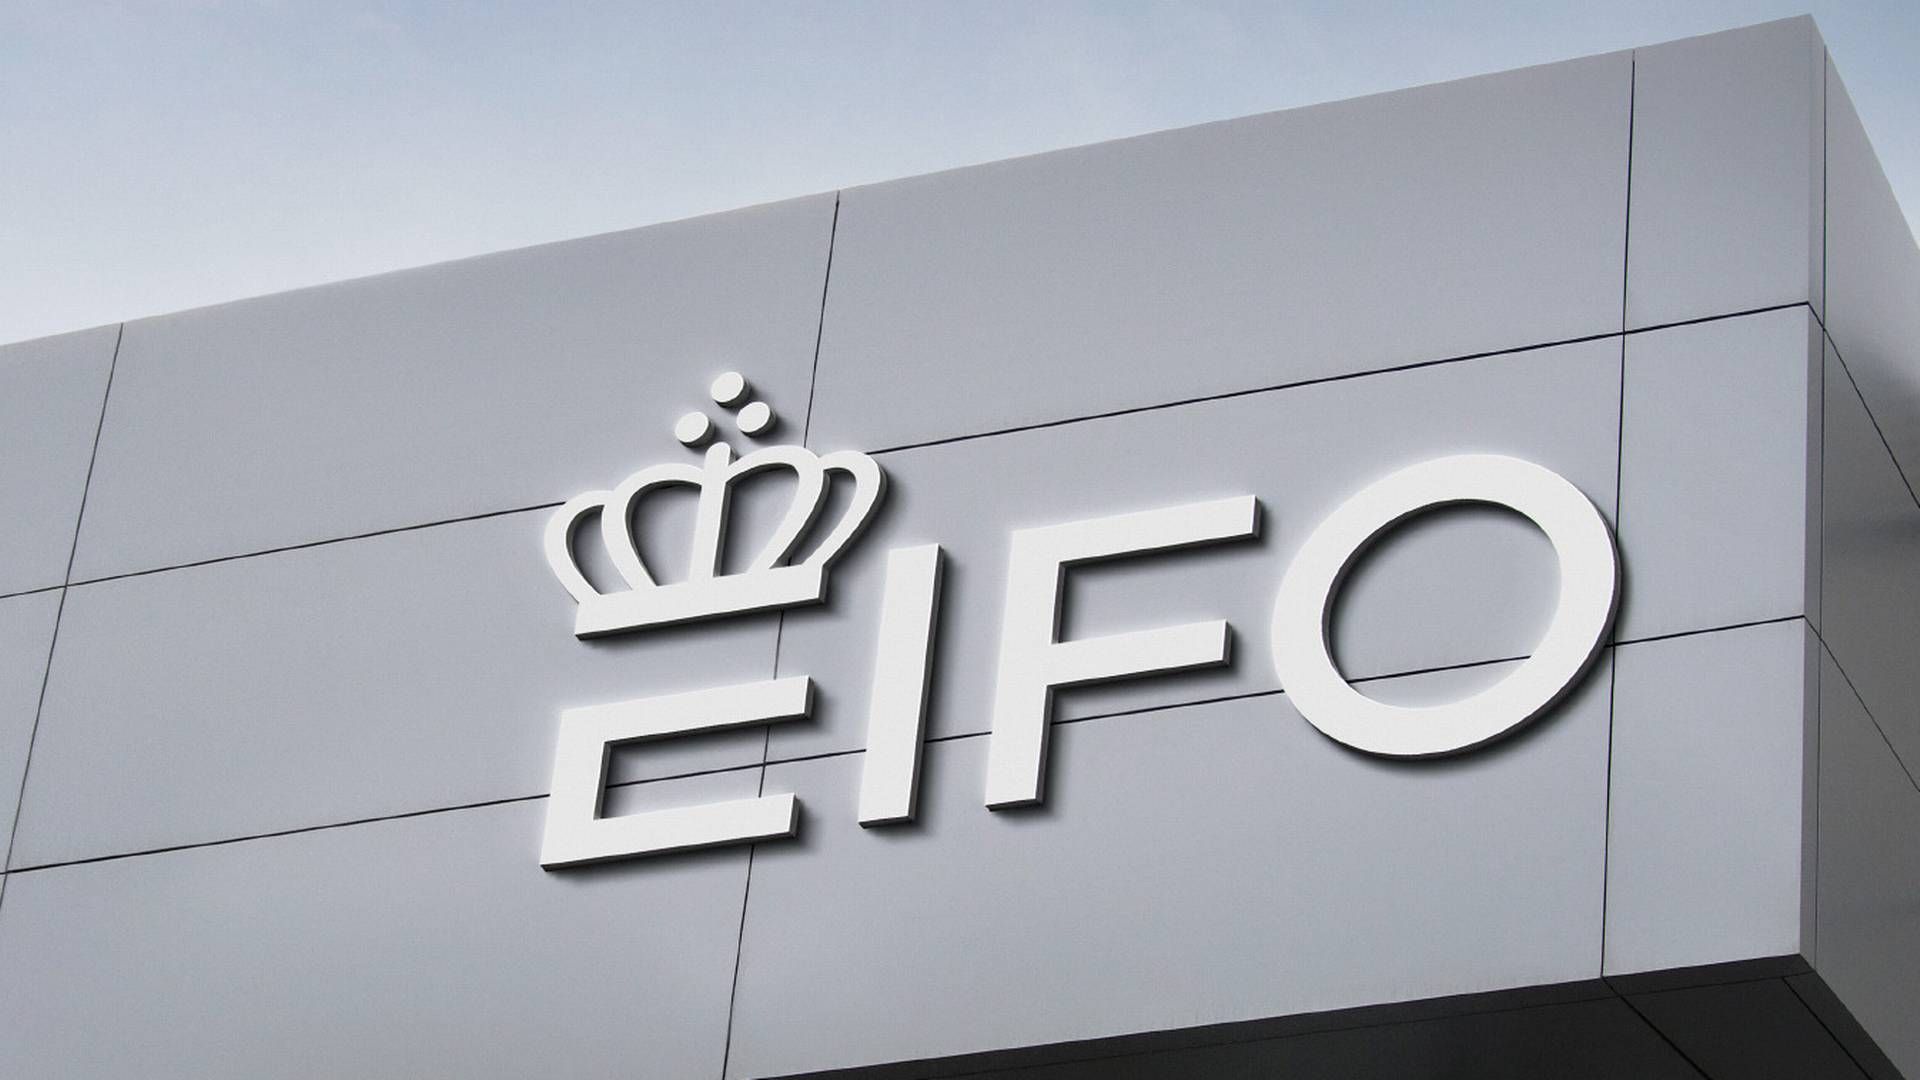 Eifo blev etableret ved årsskiftet og er en fusion af en række statslige aktører, herunder Vækstfonden. | Foto: Eifo / Pr